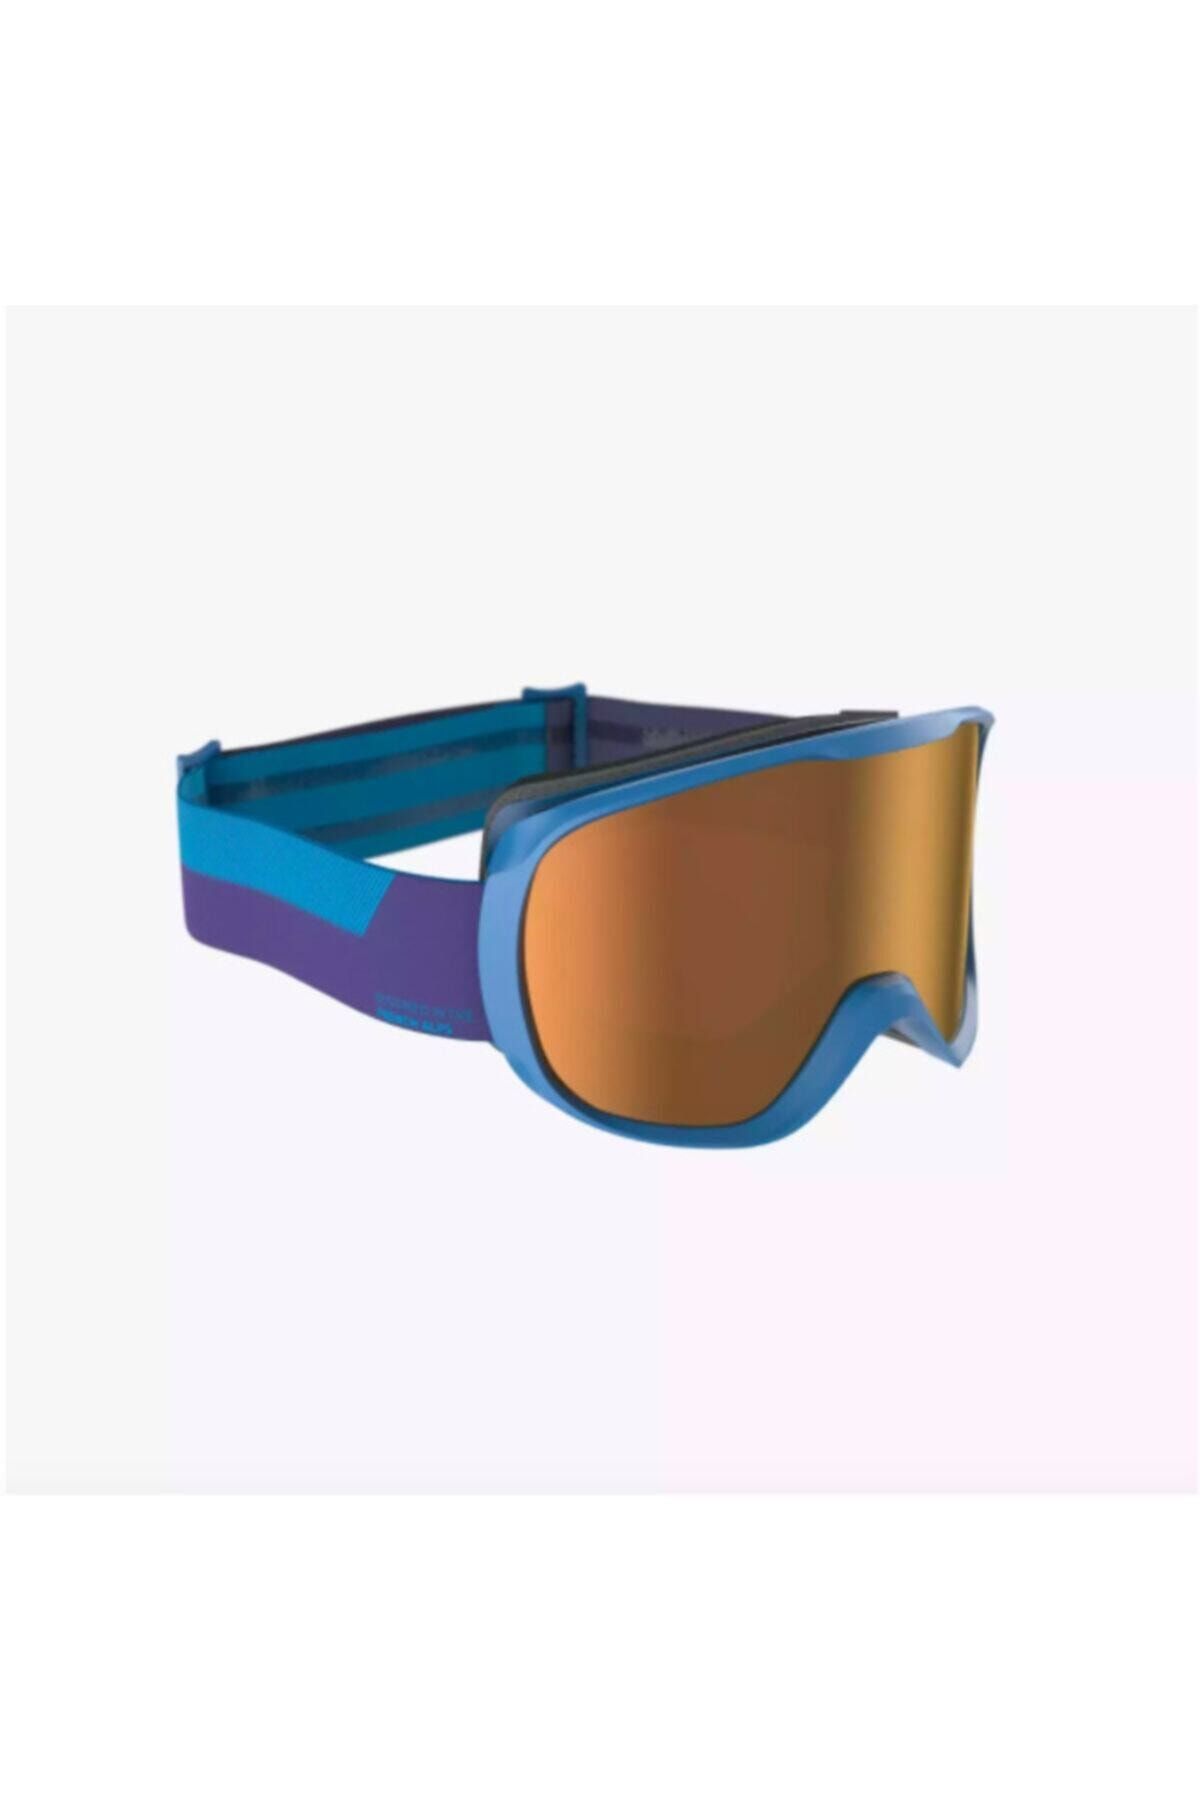 Decathlon - Kayak Snowboard Gözlüğü Çocuk Mavi G500